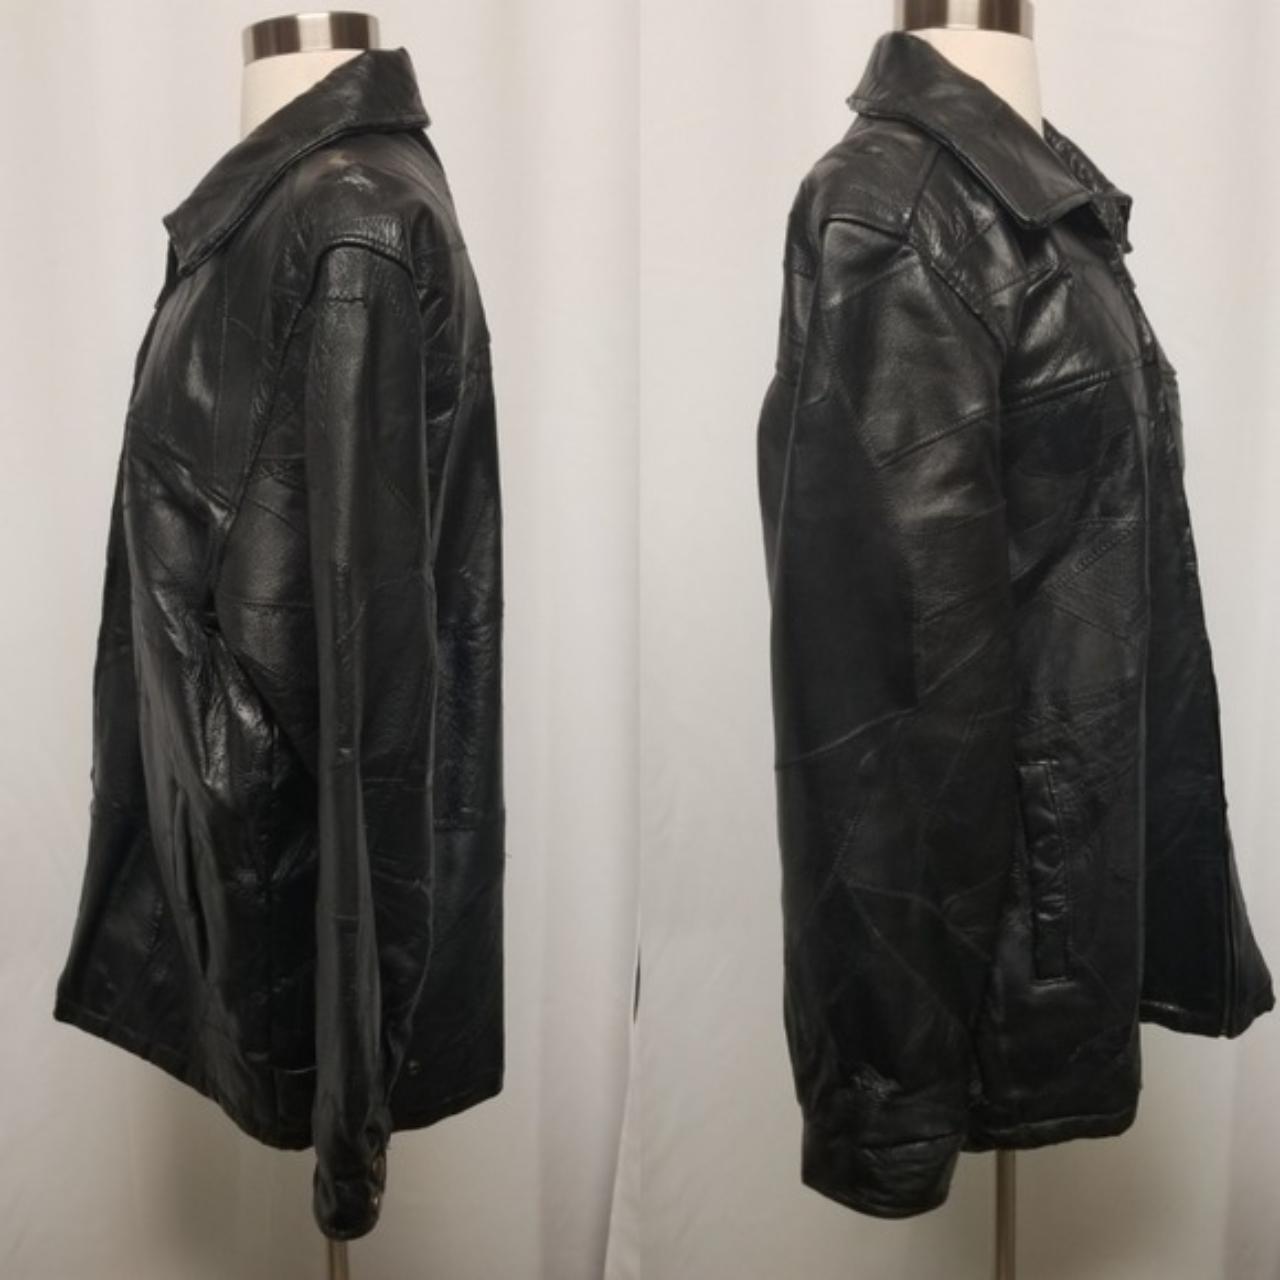 Vintage 90s y2k Patchwork Leather LeWorld Fine... - Depop